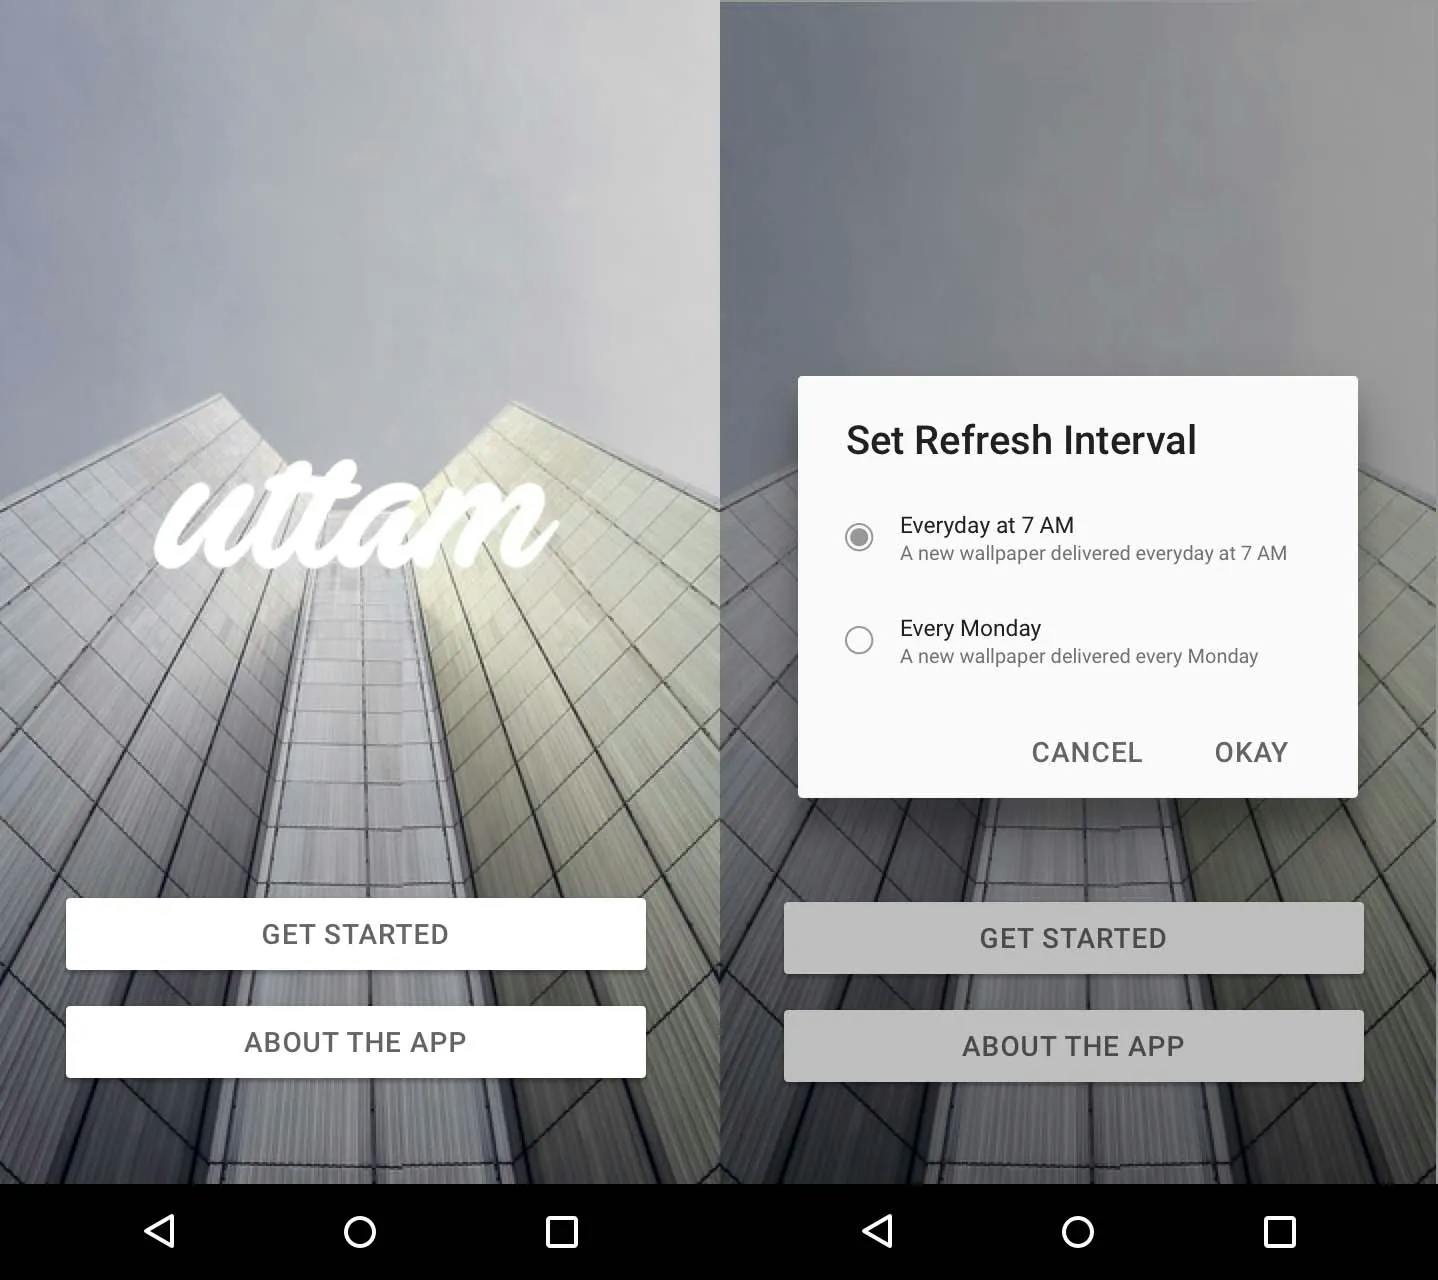 App design for Uttam: Start screen (left), Setup dialog (right)